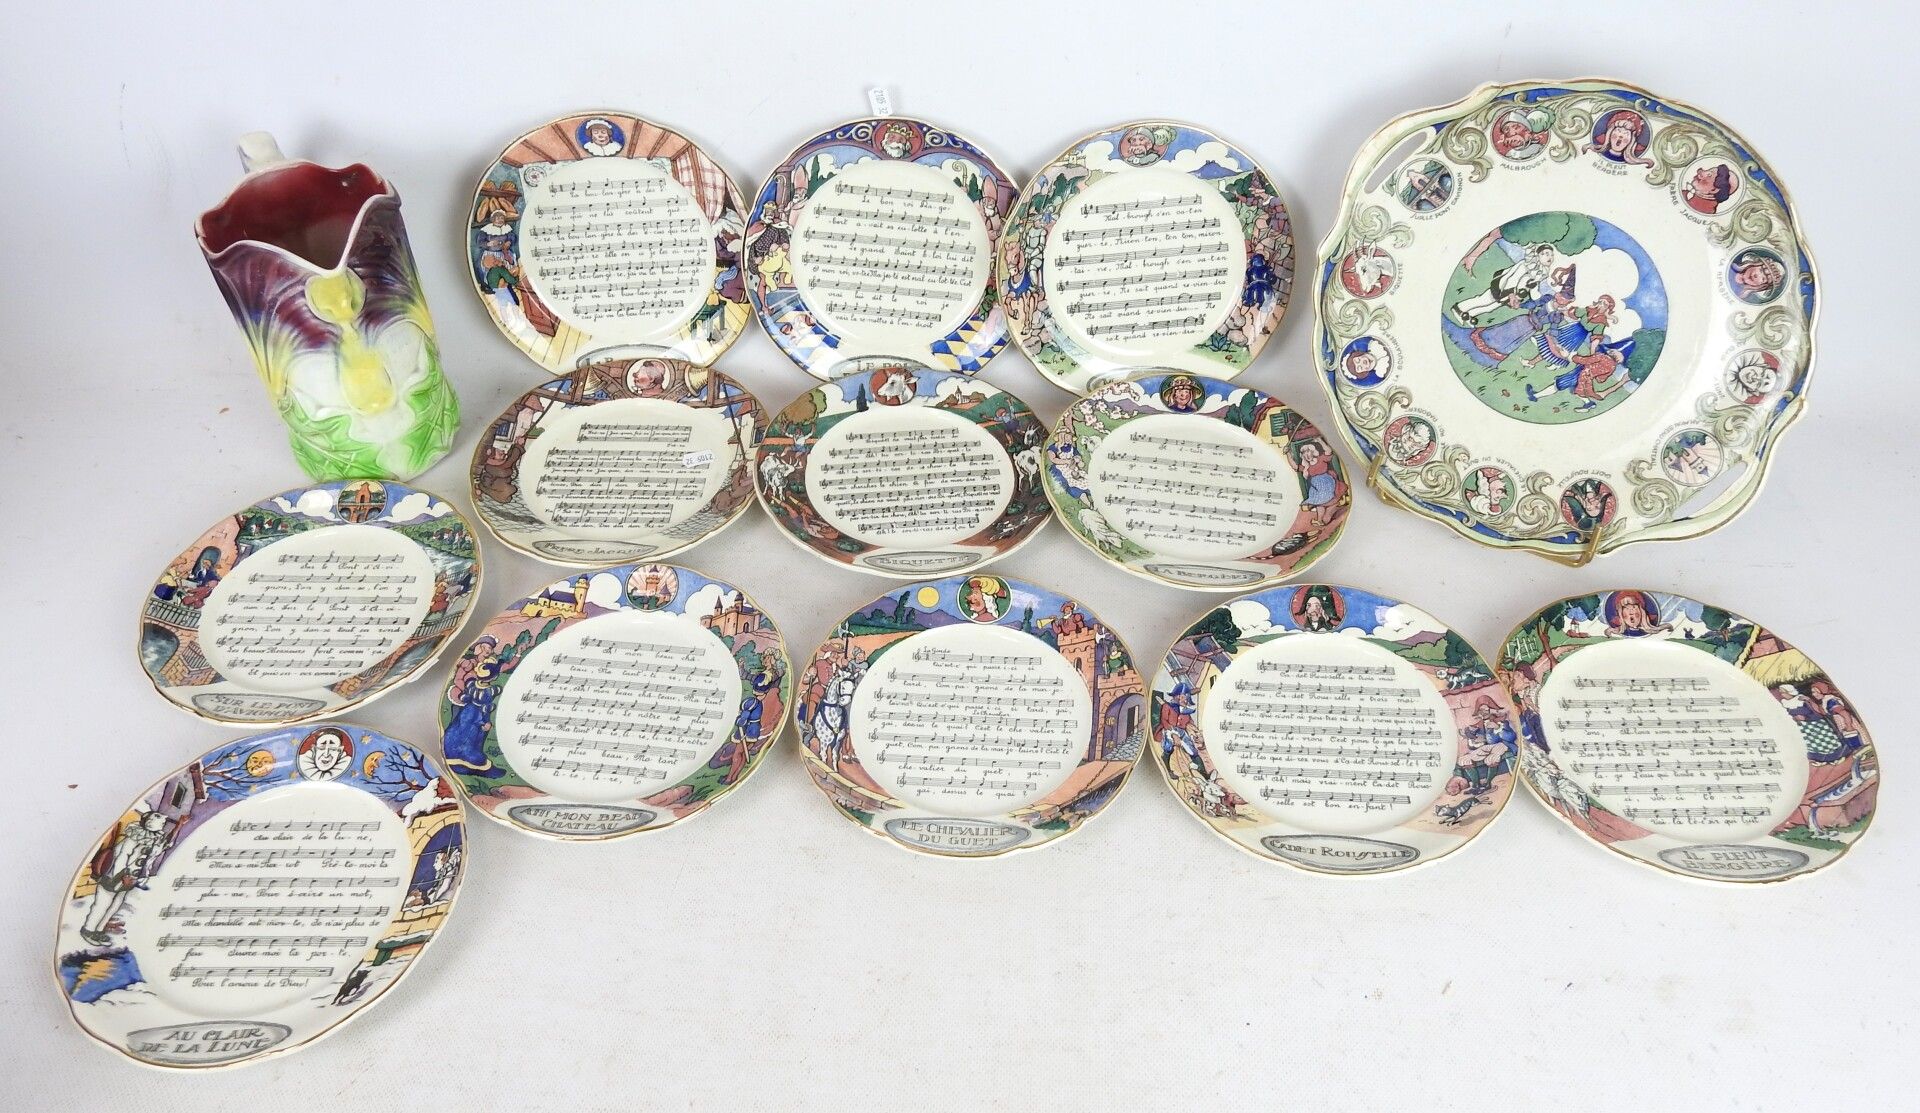 Null SARREGUEMINES：12个盘子和一个盘子，用陶器装饰，上面有法国的歌曲和圆盘。附上一个来自ONNAING的巴比伦的投手。高度：20厘米。